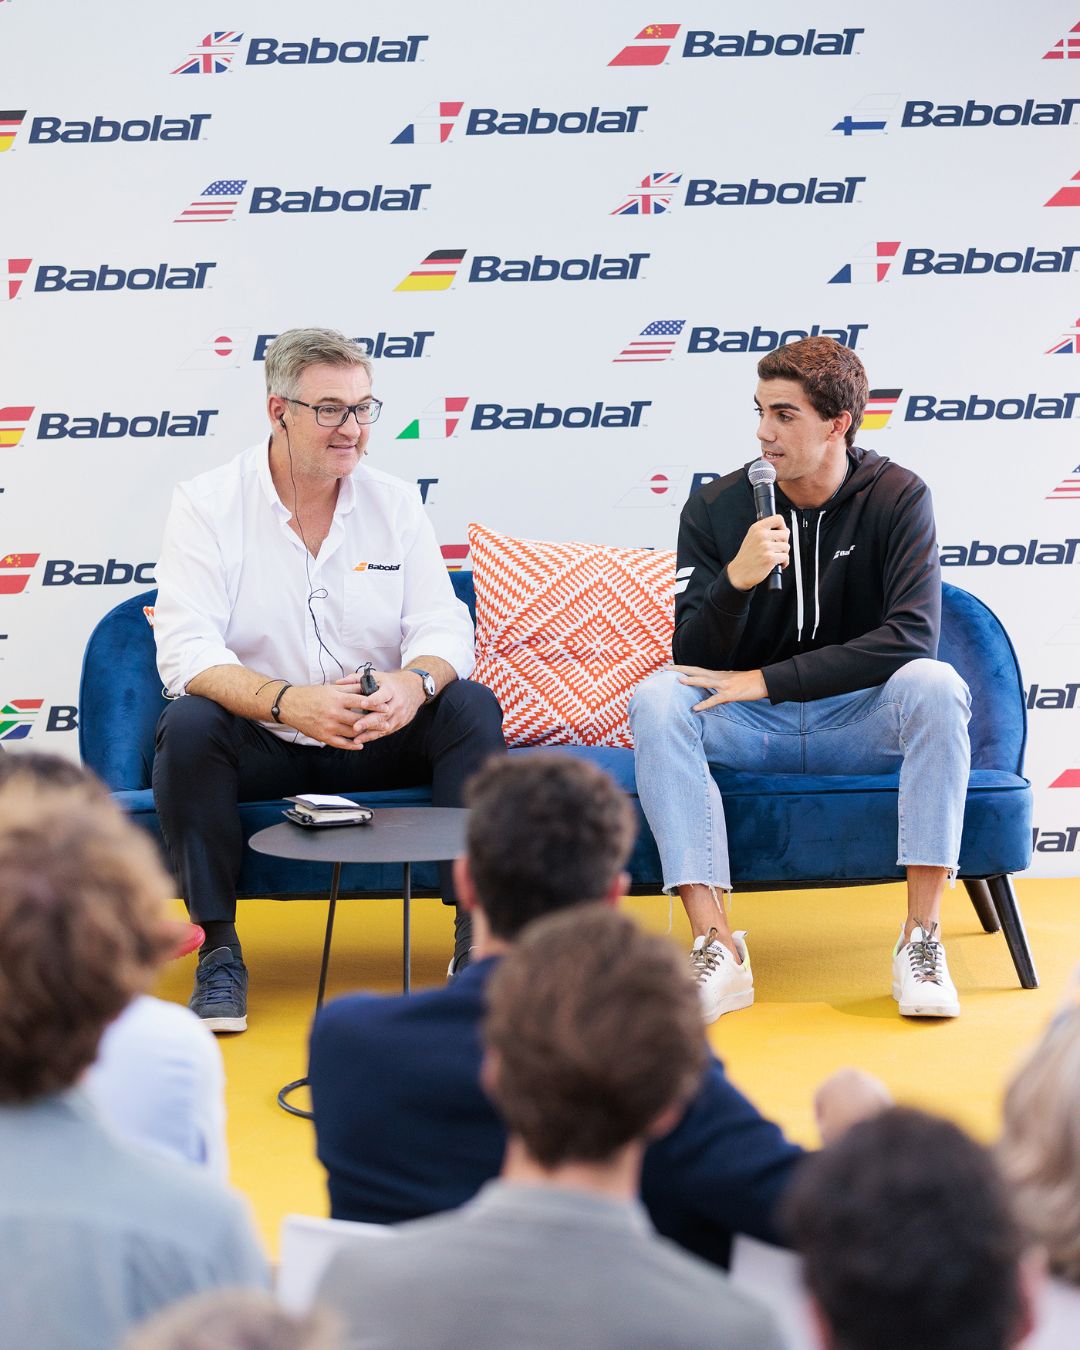 El anuncio se realizó este martes en Madrid con la asistencia de Eric Babolat, CEO de Babolat, junto al campeón del mundo de pádel, Juan Lebrón